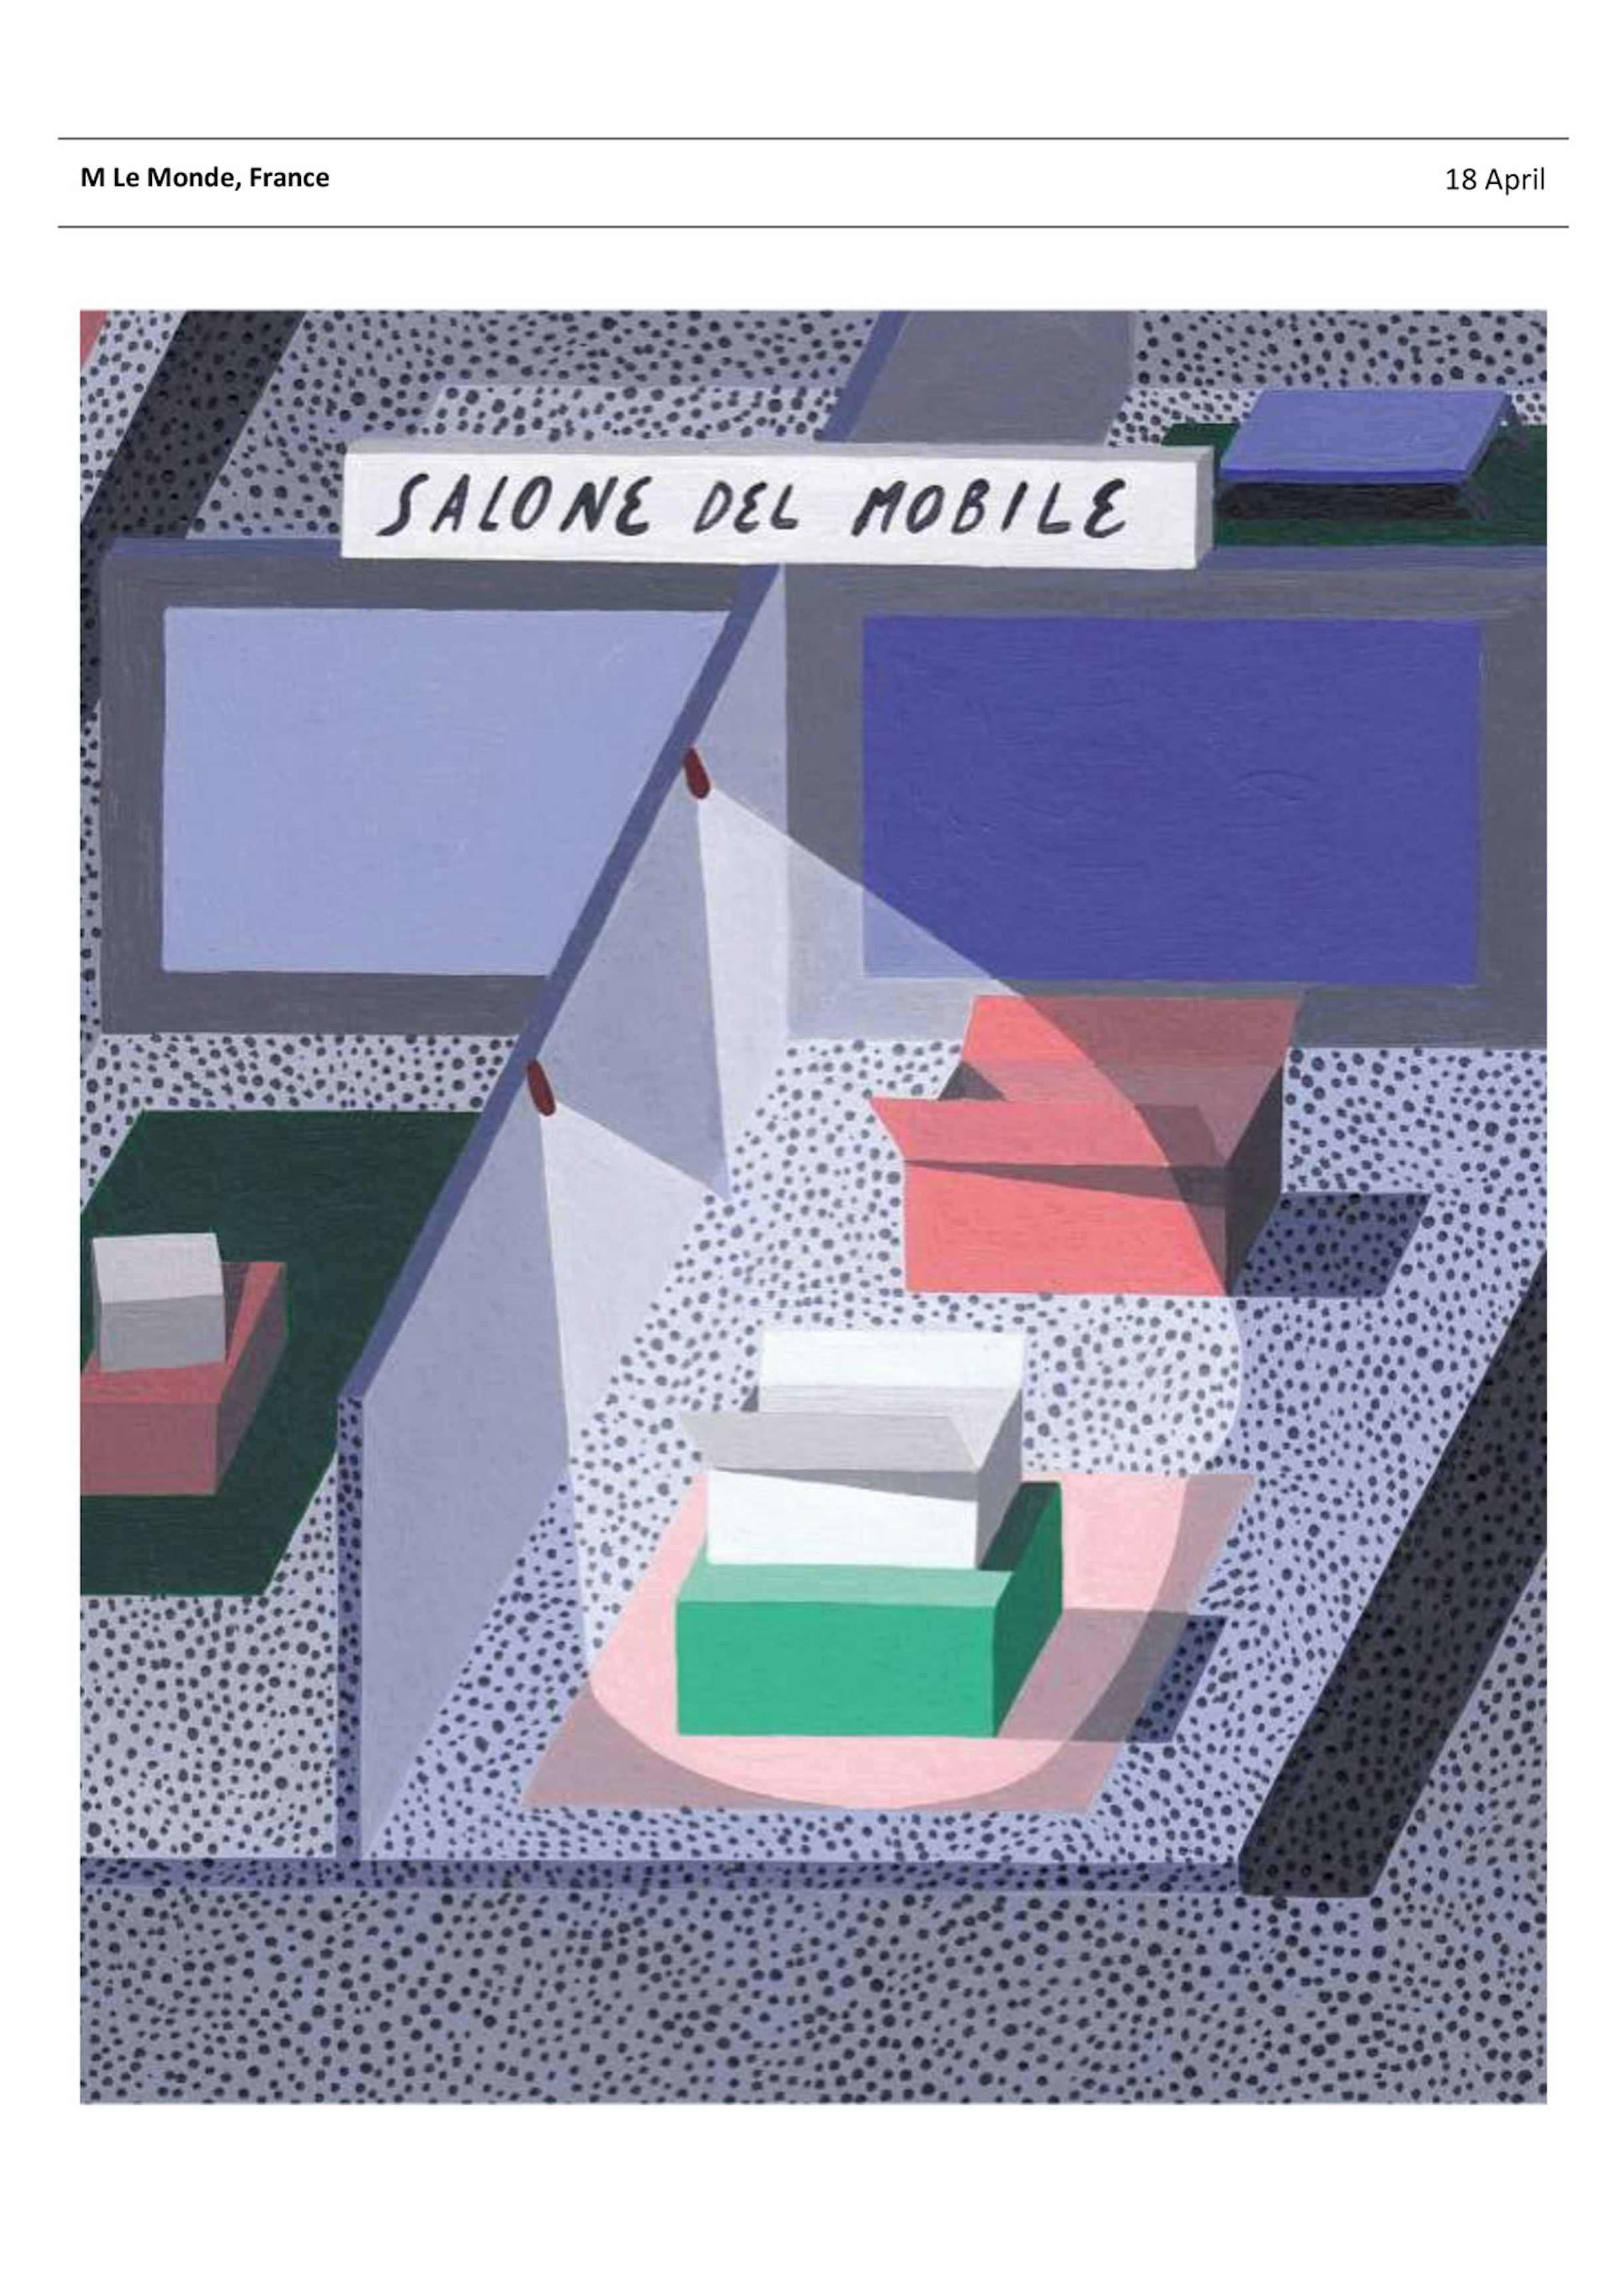 M LE Monde - Salone del Mobile - image